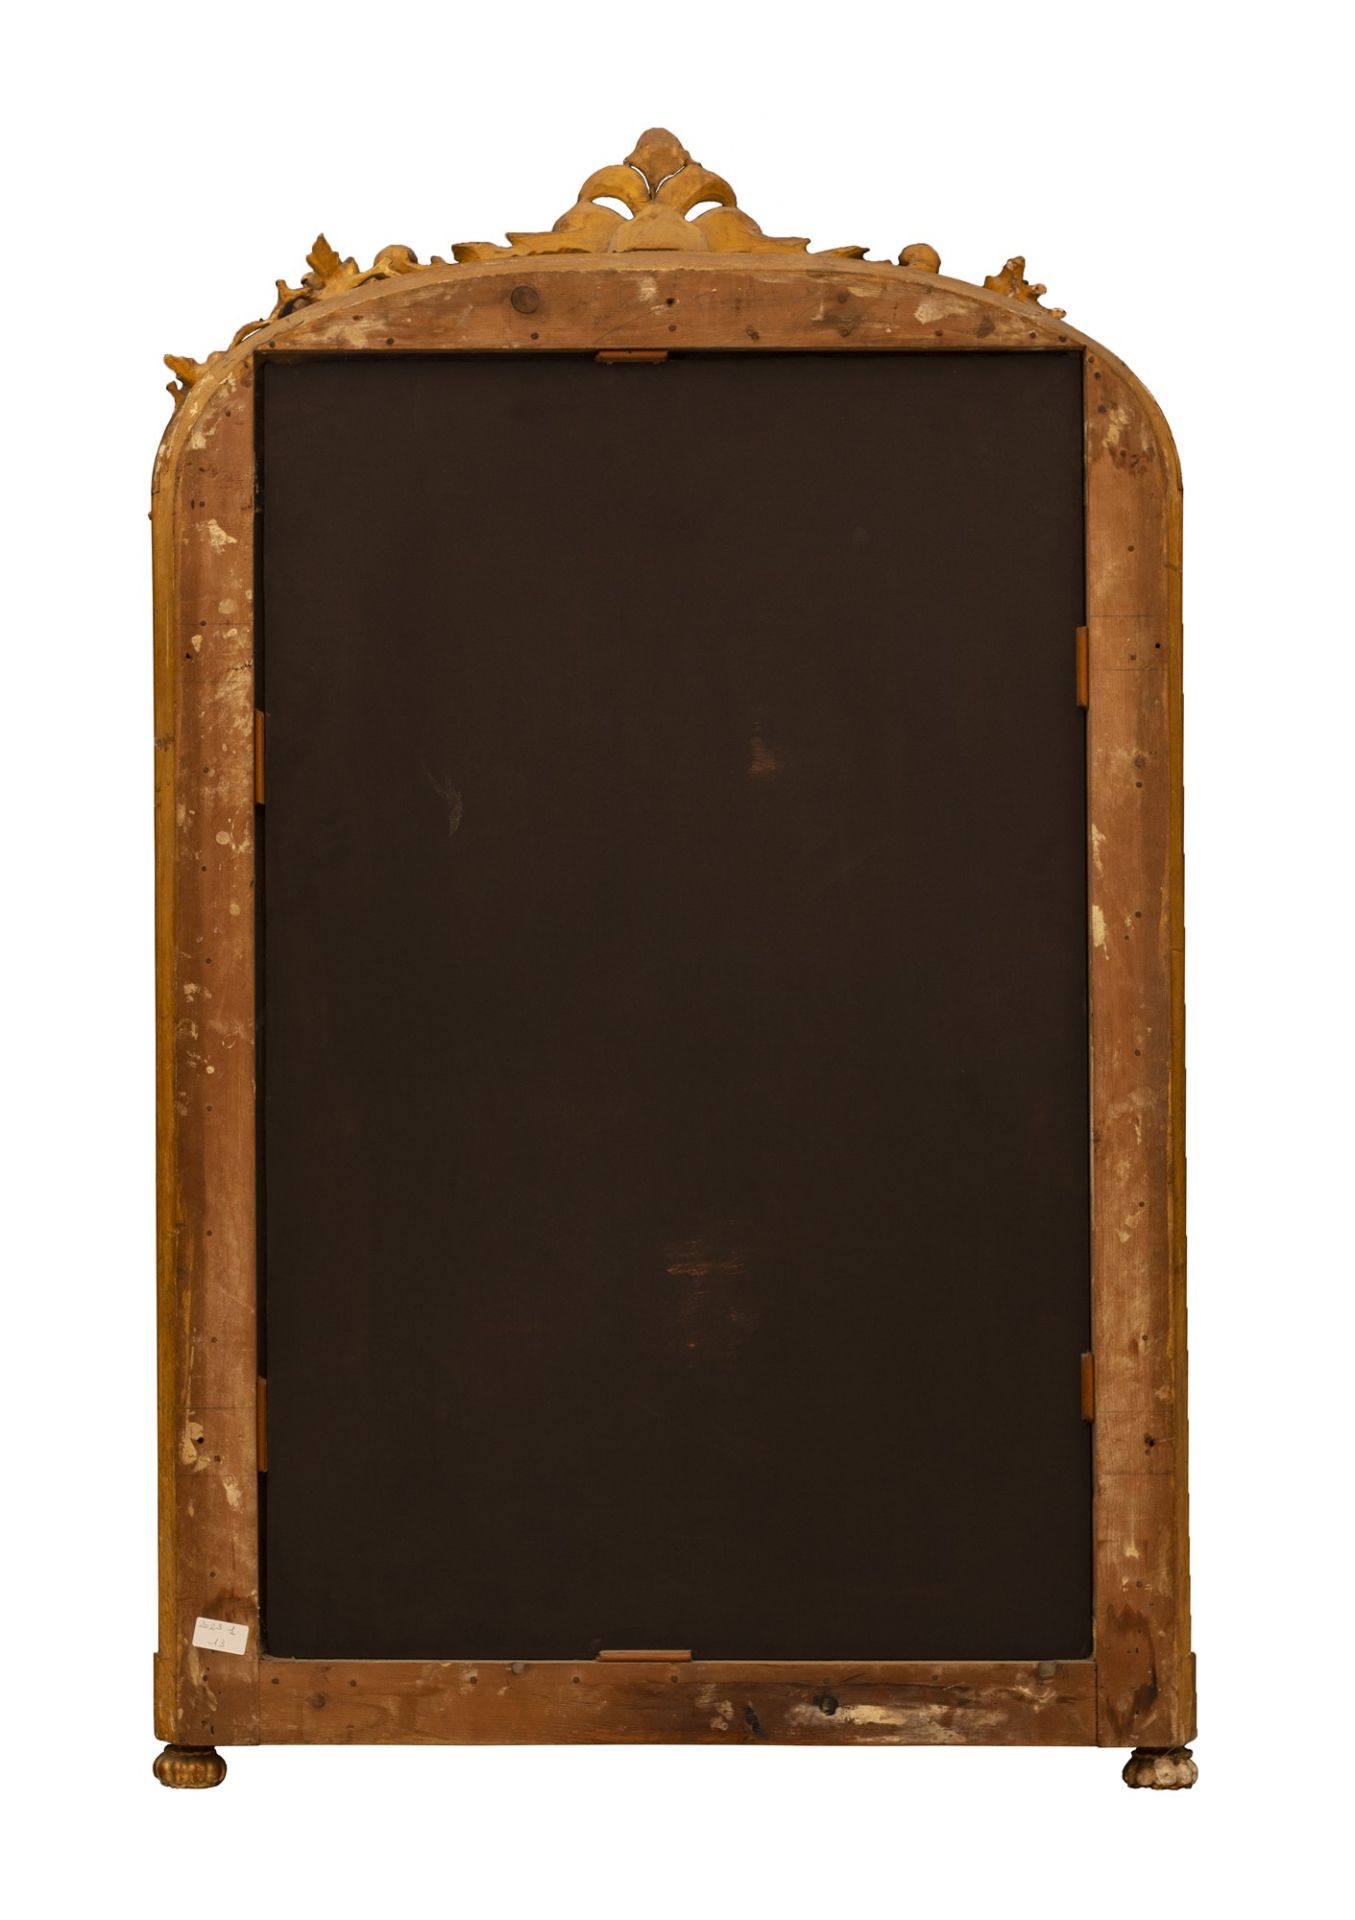 Specchiera caminiera in legno dorato con cimasa centinata - Image 2 of 2